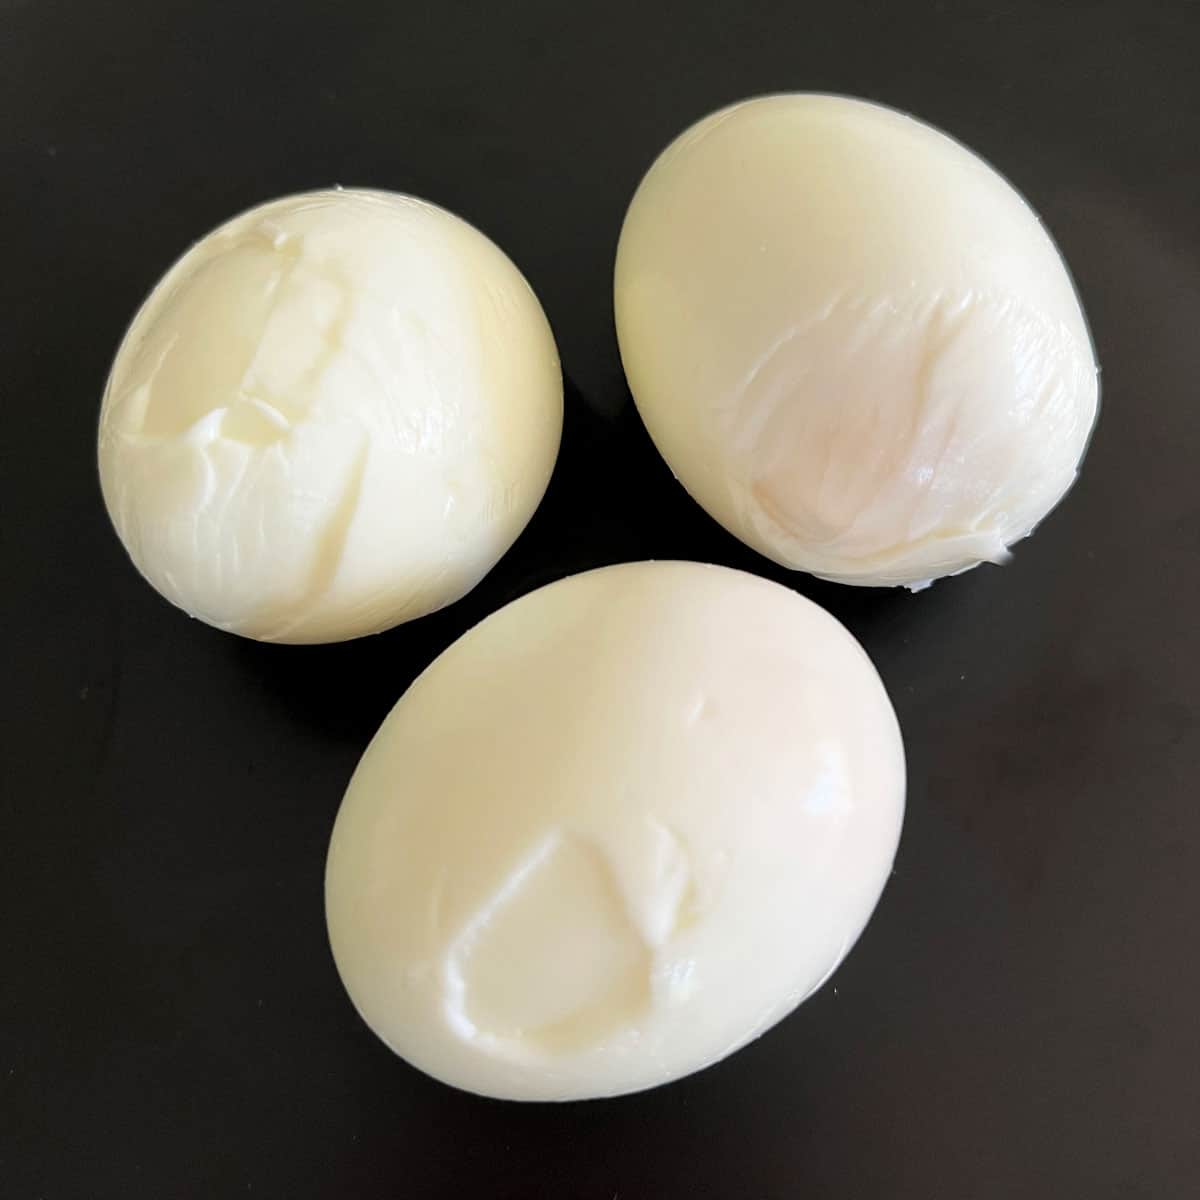 Deformed hard-boiled eggs where the egg white stuck to the inner membrane. 